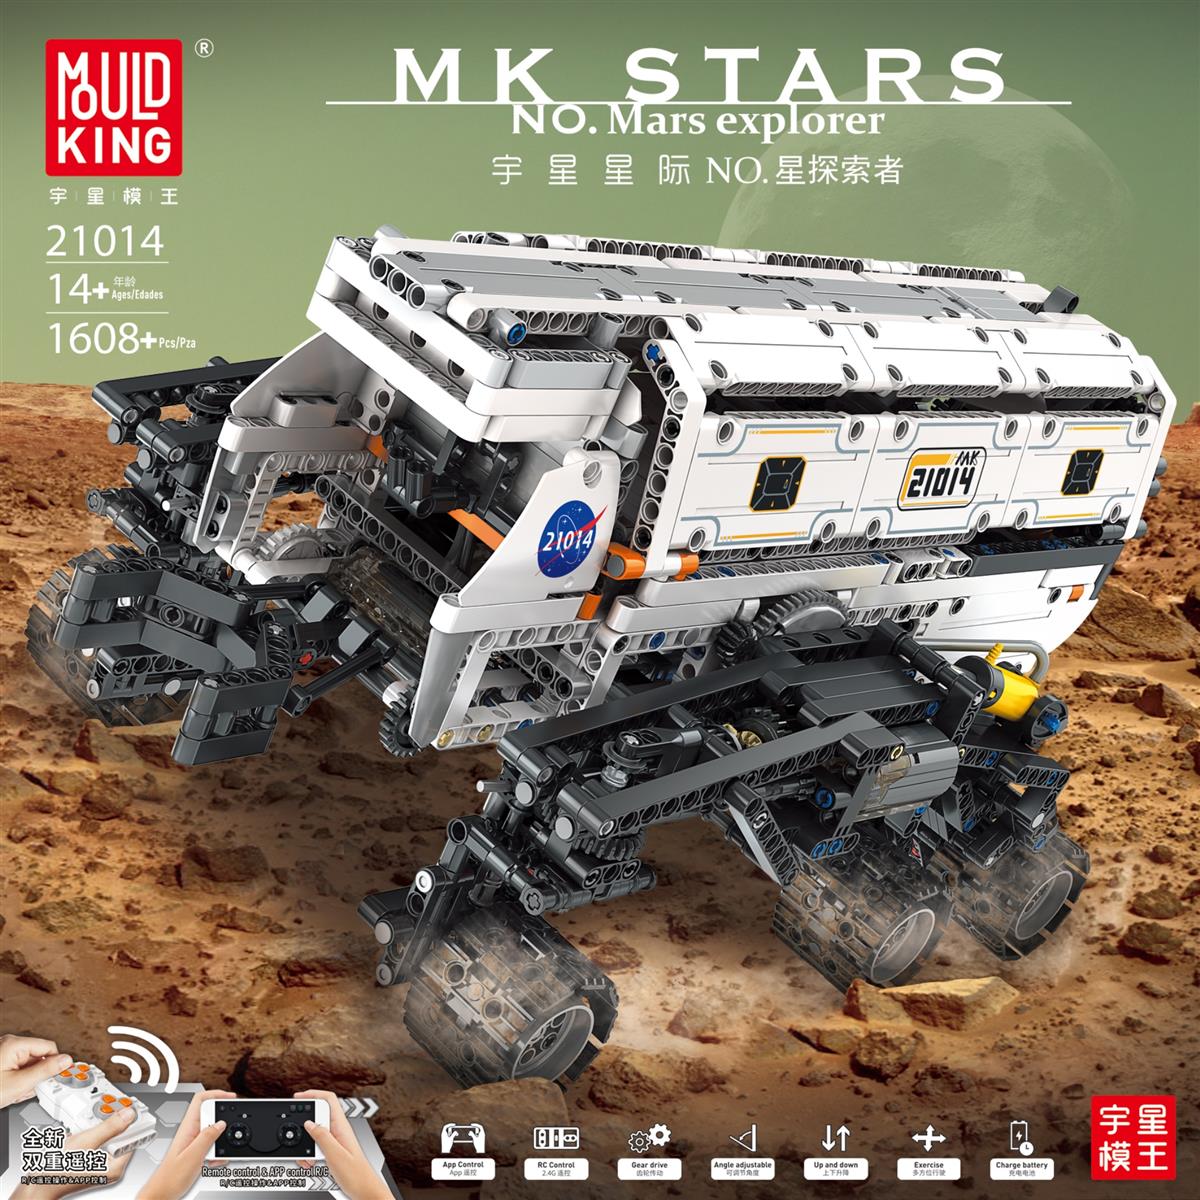 21014 - Mars Explorer (Mould King)